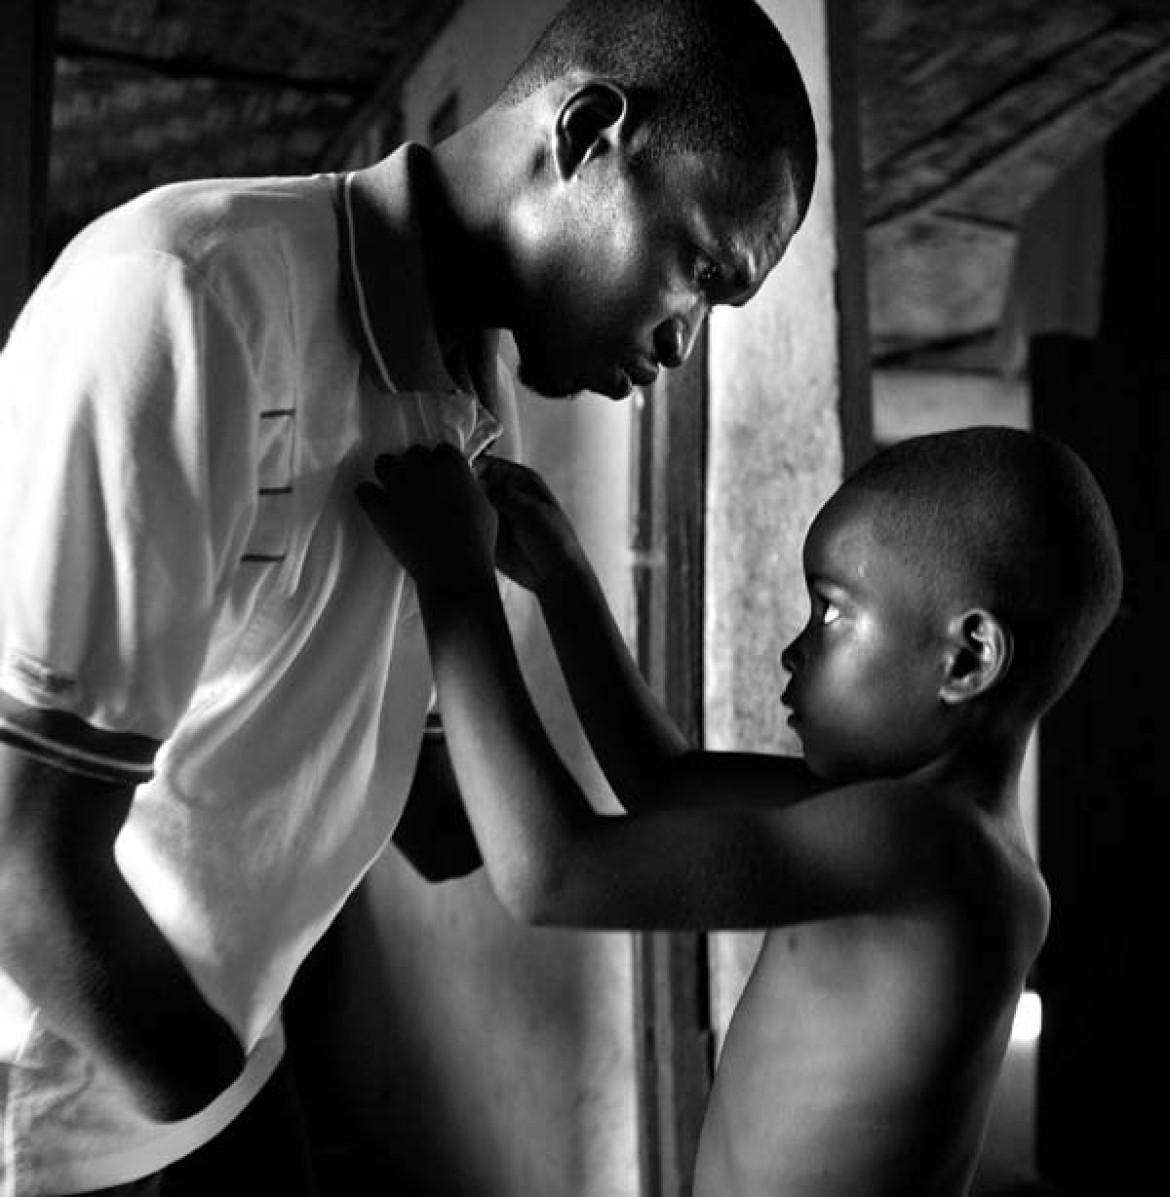 I nagroda w kategorii Problemy współczesności (zdjęcie pojedyncze), Yannis Kontos, Grecja, Polaris Images, Chłopiec pomaga ojcu w ubraniu się, Sierra Leone;